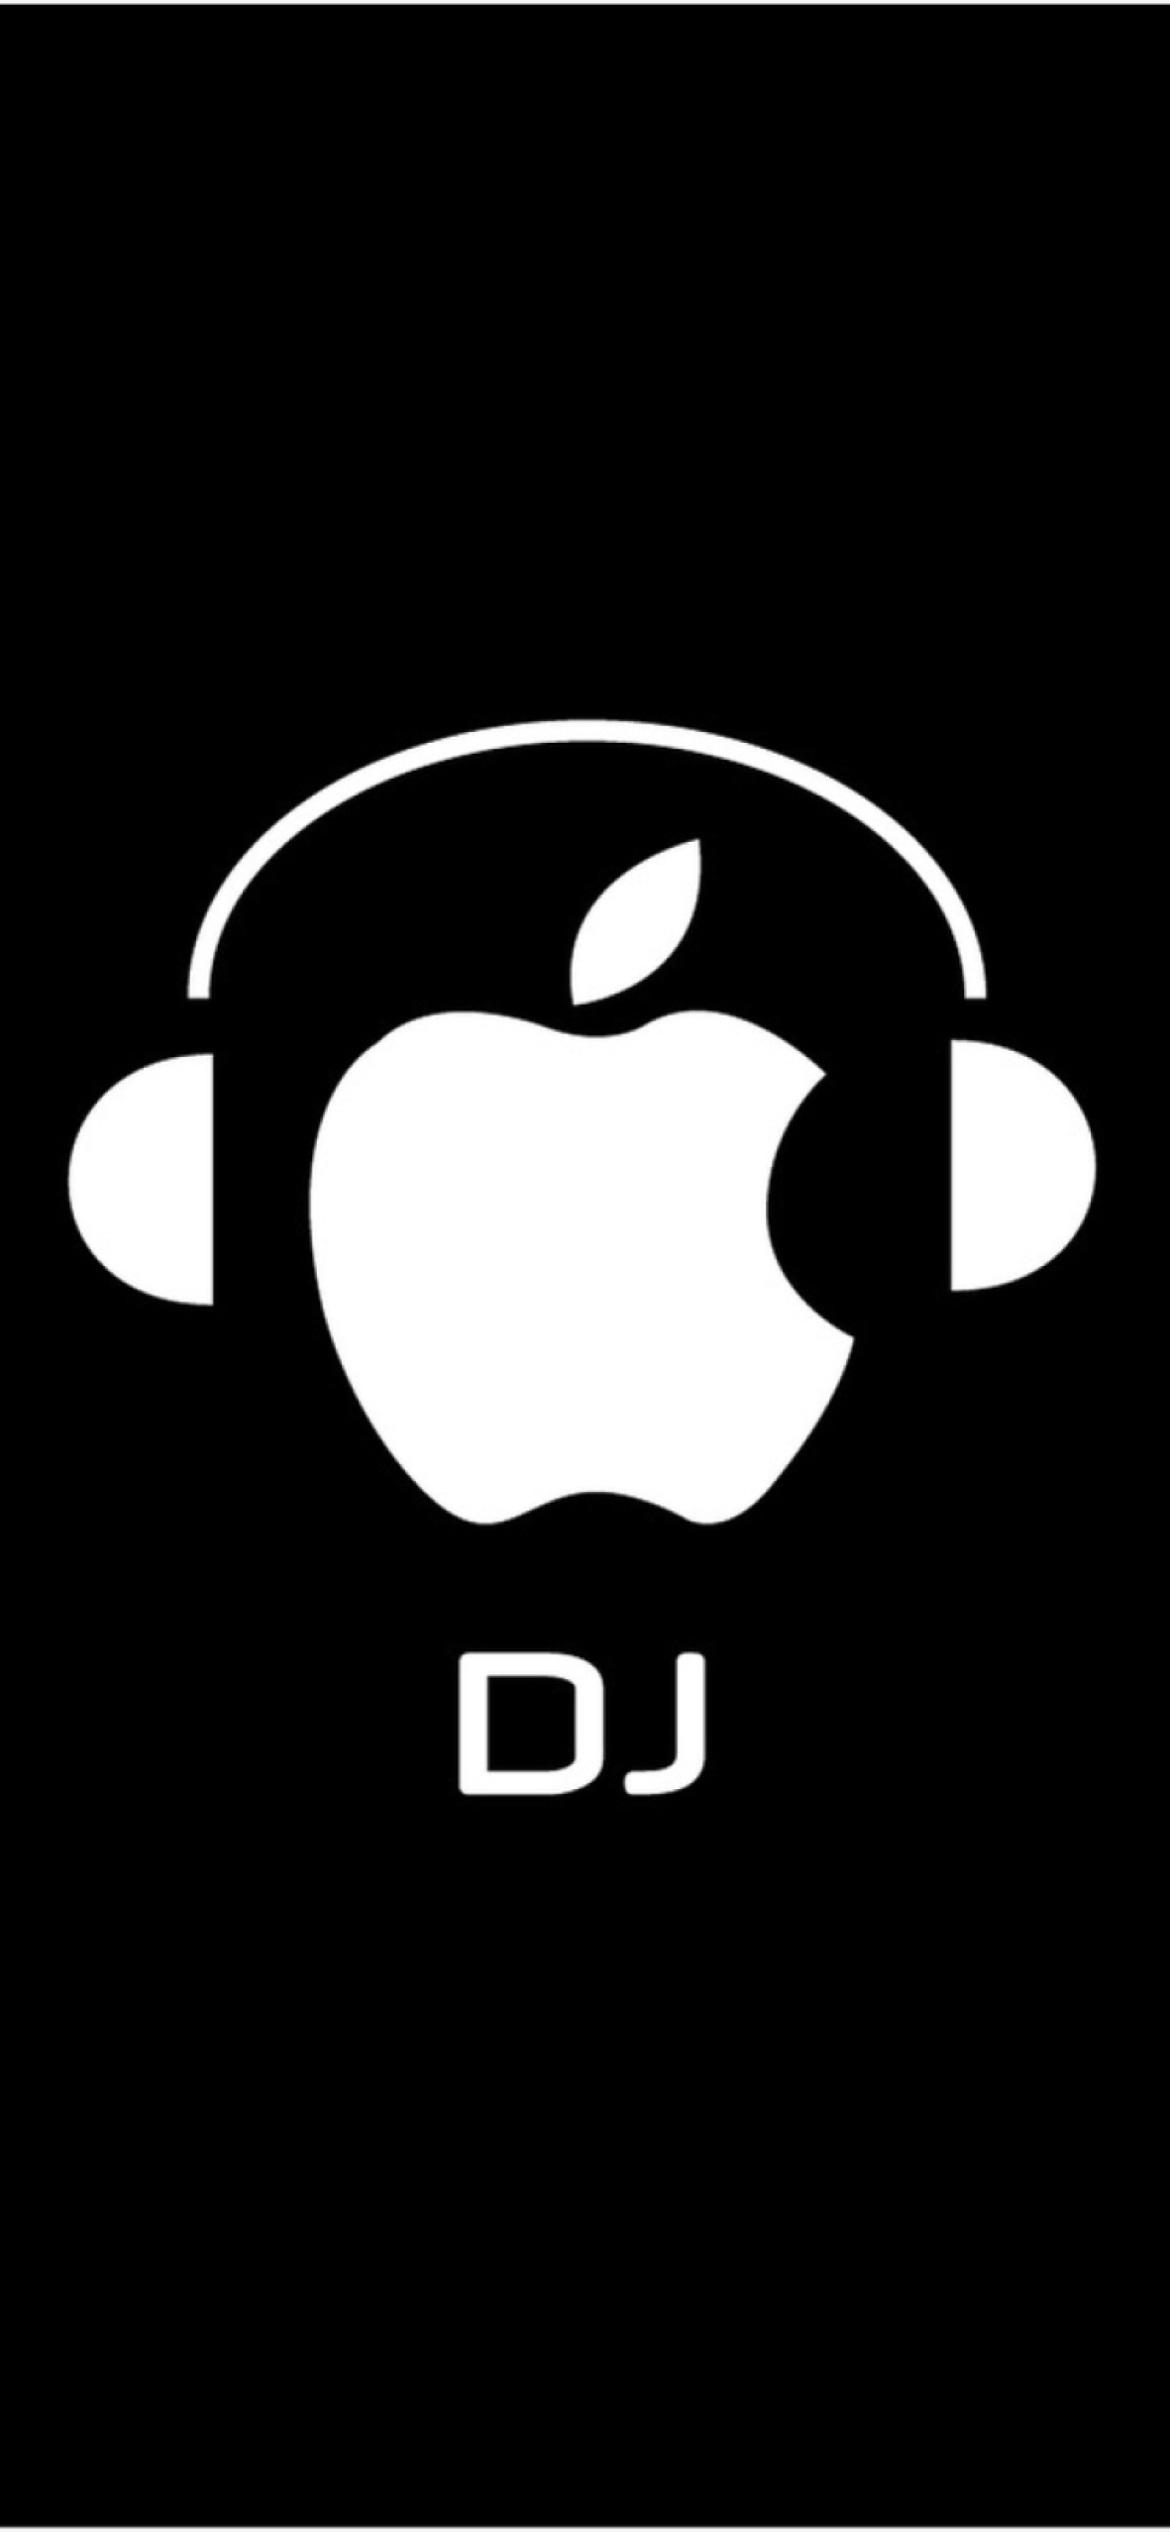 Fondo de pantalla Apple DJ 1170x2532